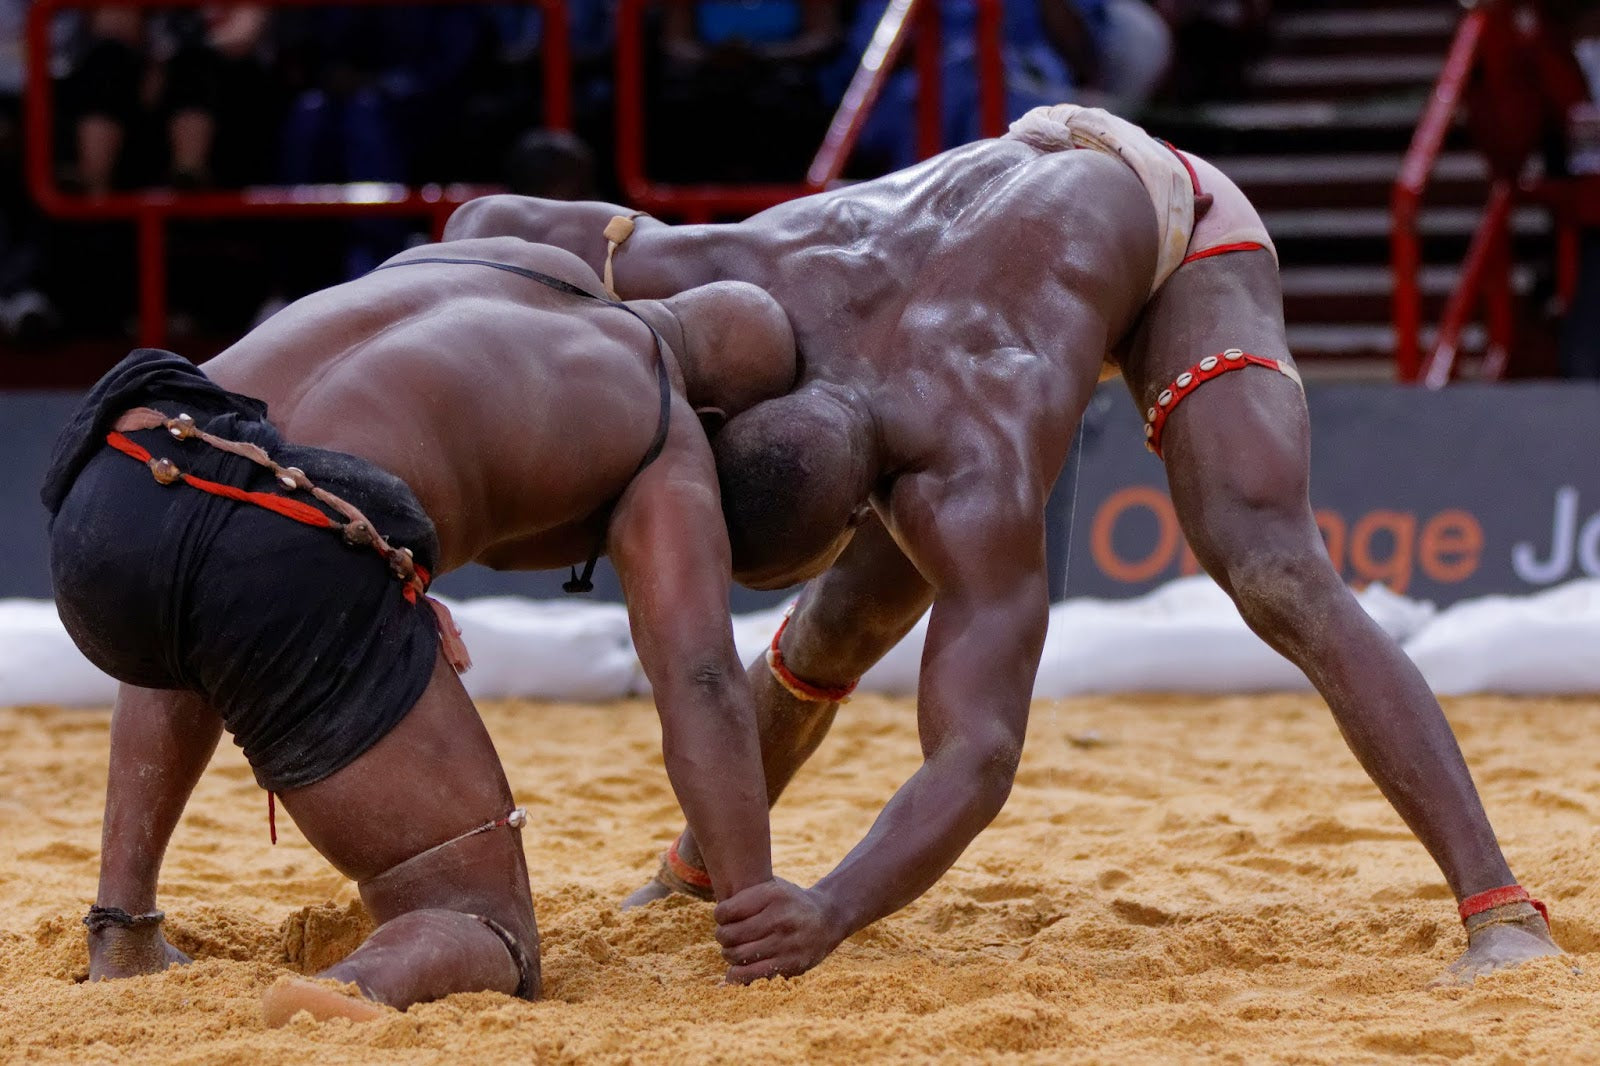 Luta livre senegalesa, a arte marcial do rei das areias - Solo Artes  Marciales